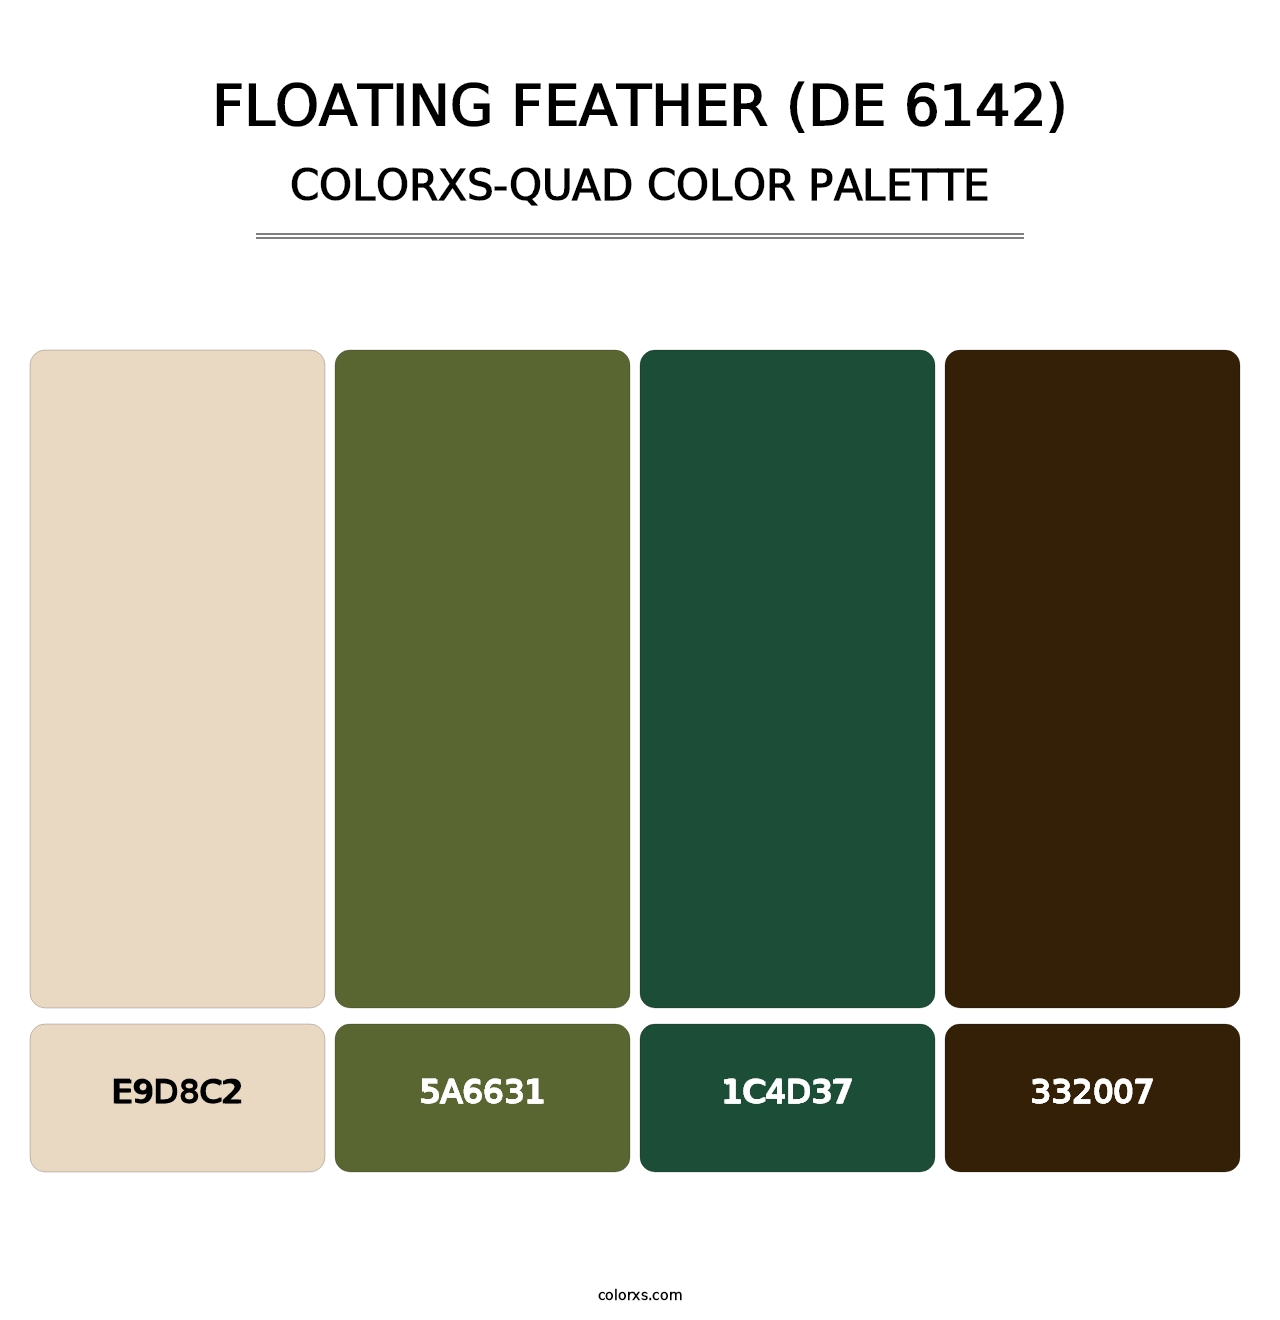 Floating Feather (DE 6142) - Colorxs Quad Palette